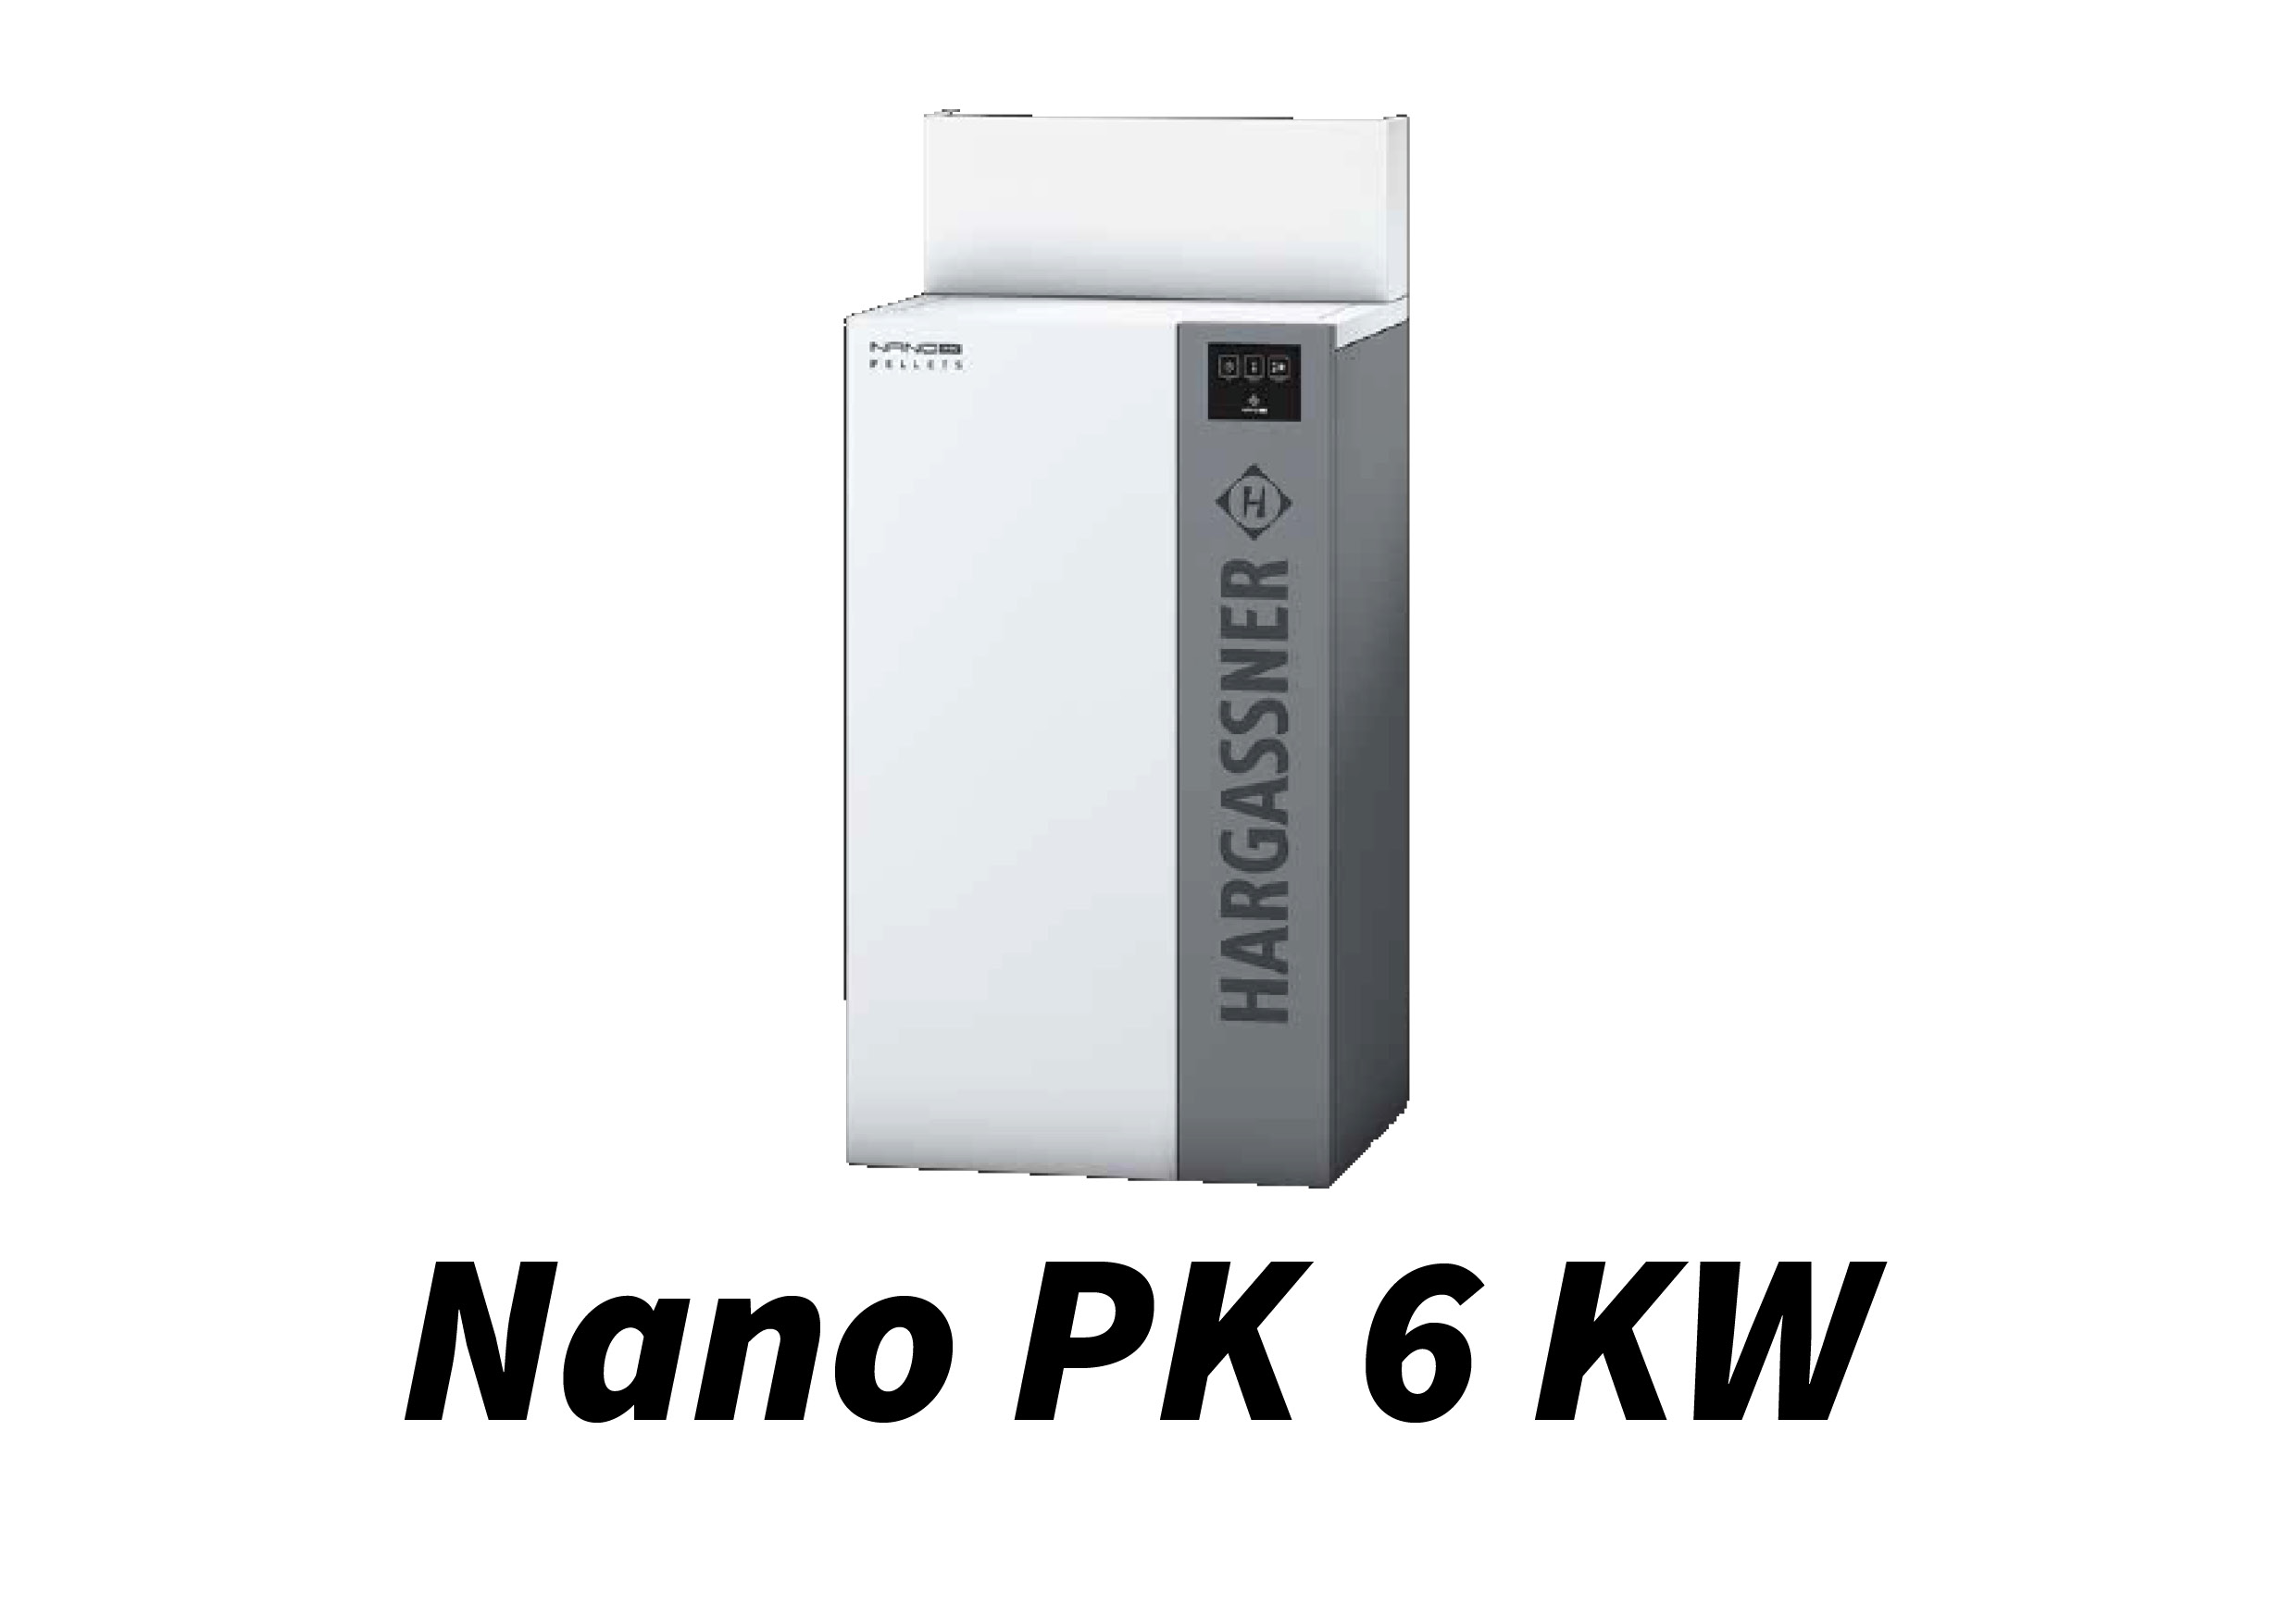 Nano PK 6 kW